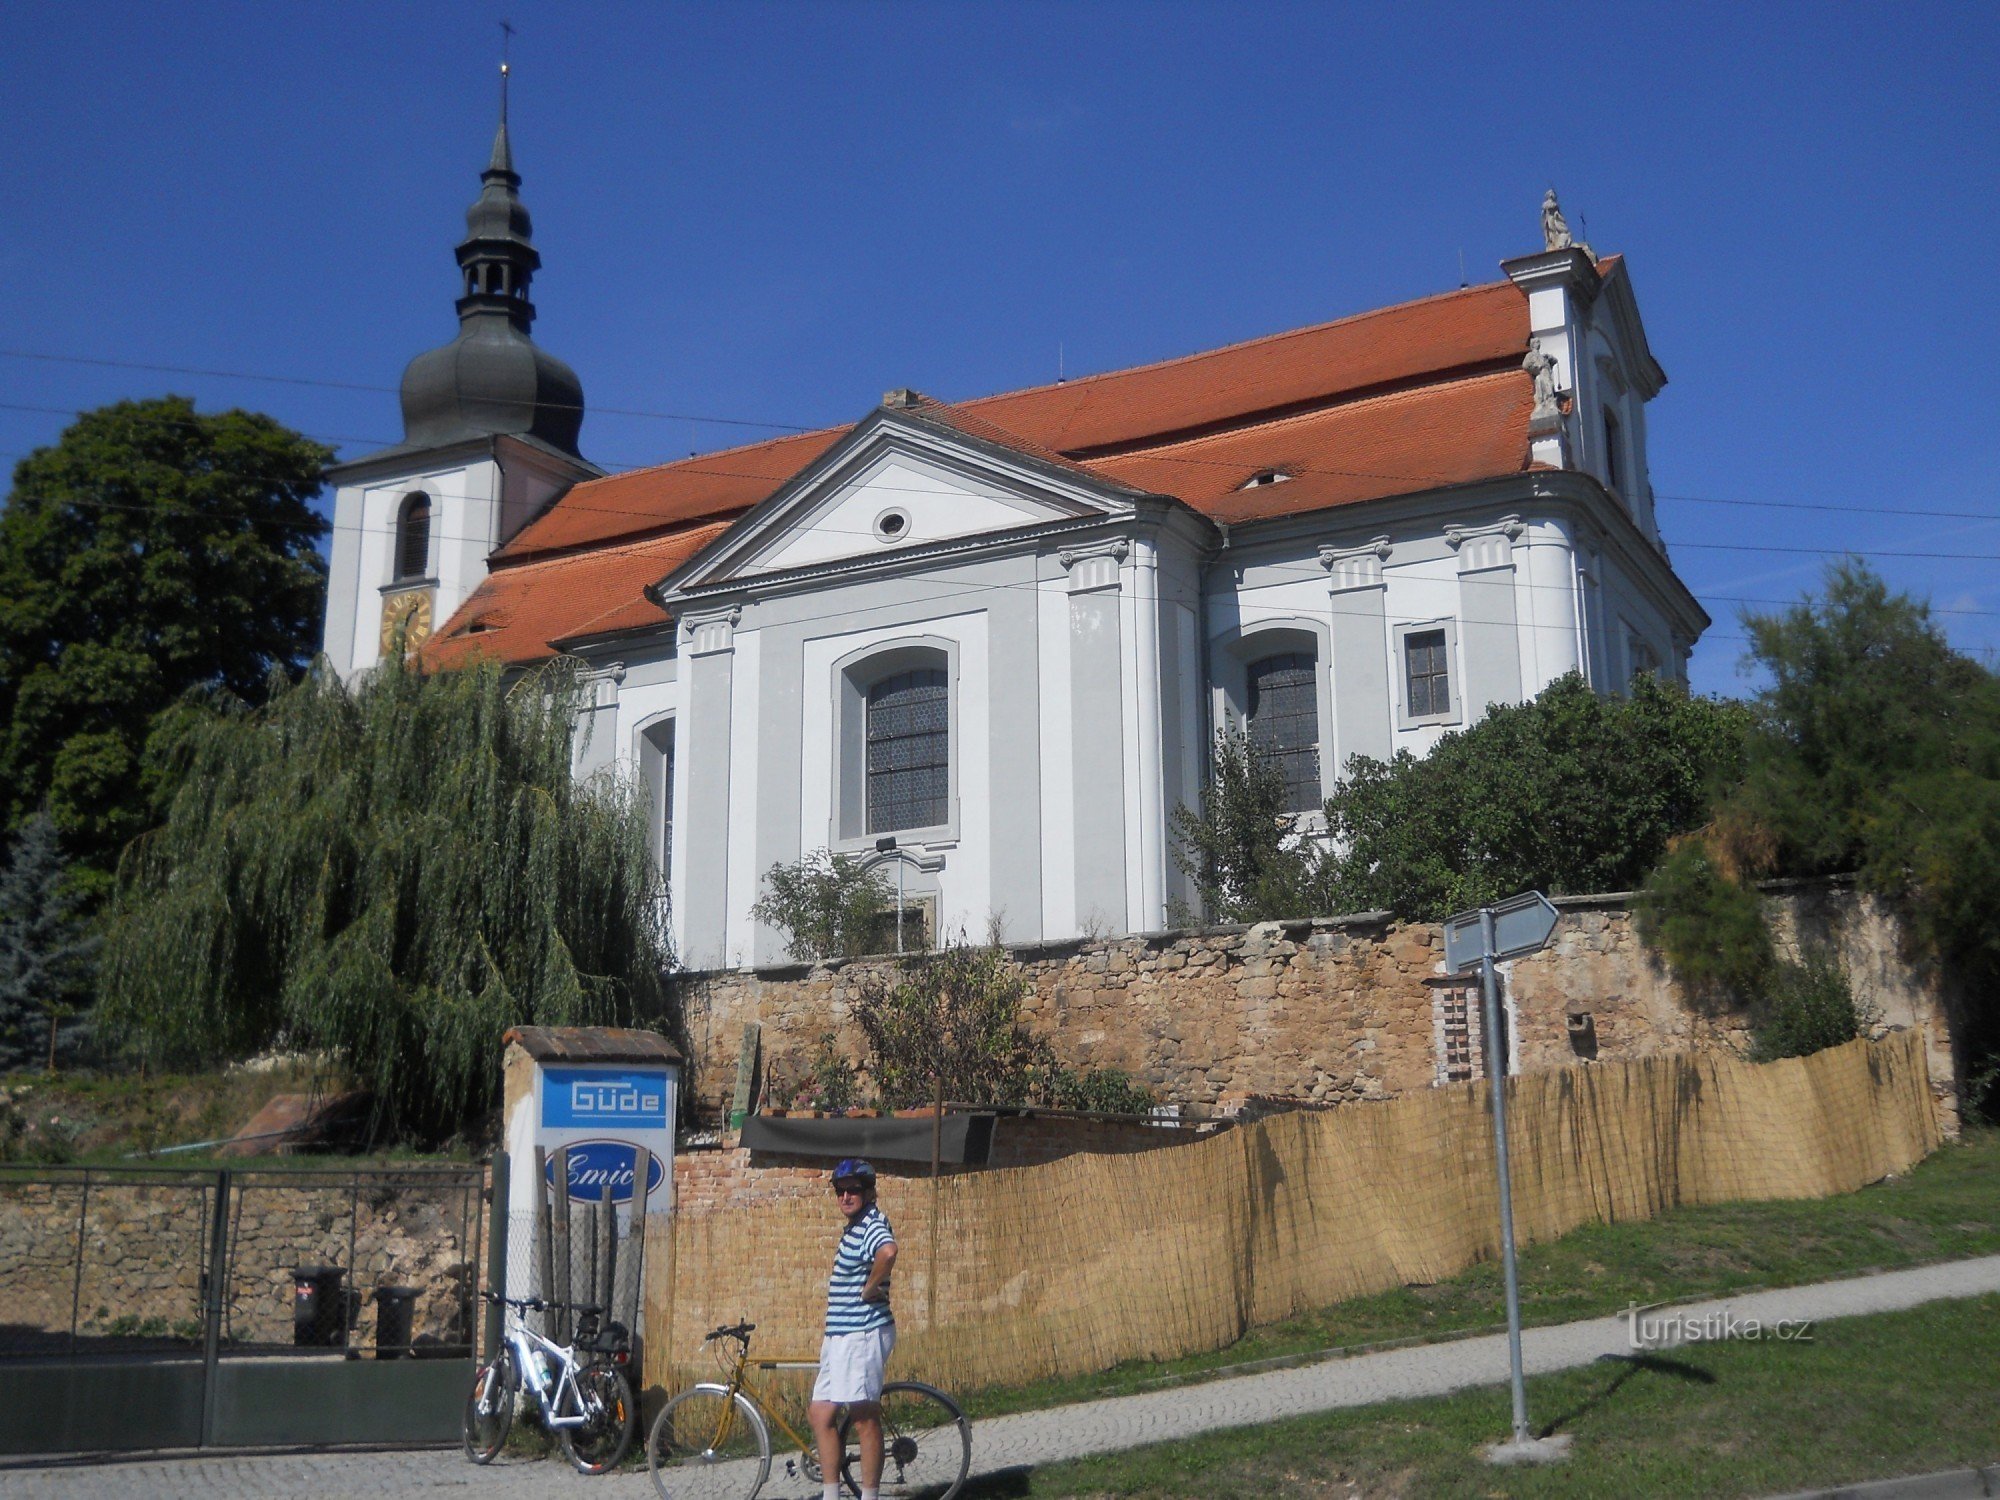 Vejprnice - nhà thờ baroque của St. Vojtěch từ 1722 - 1726